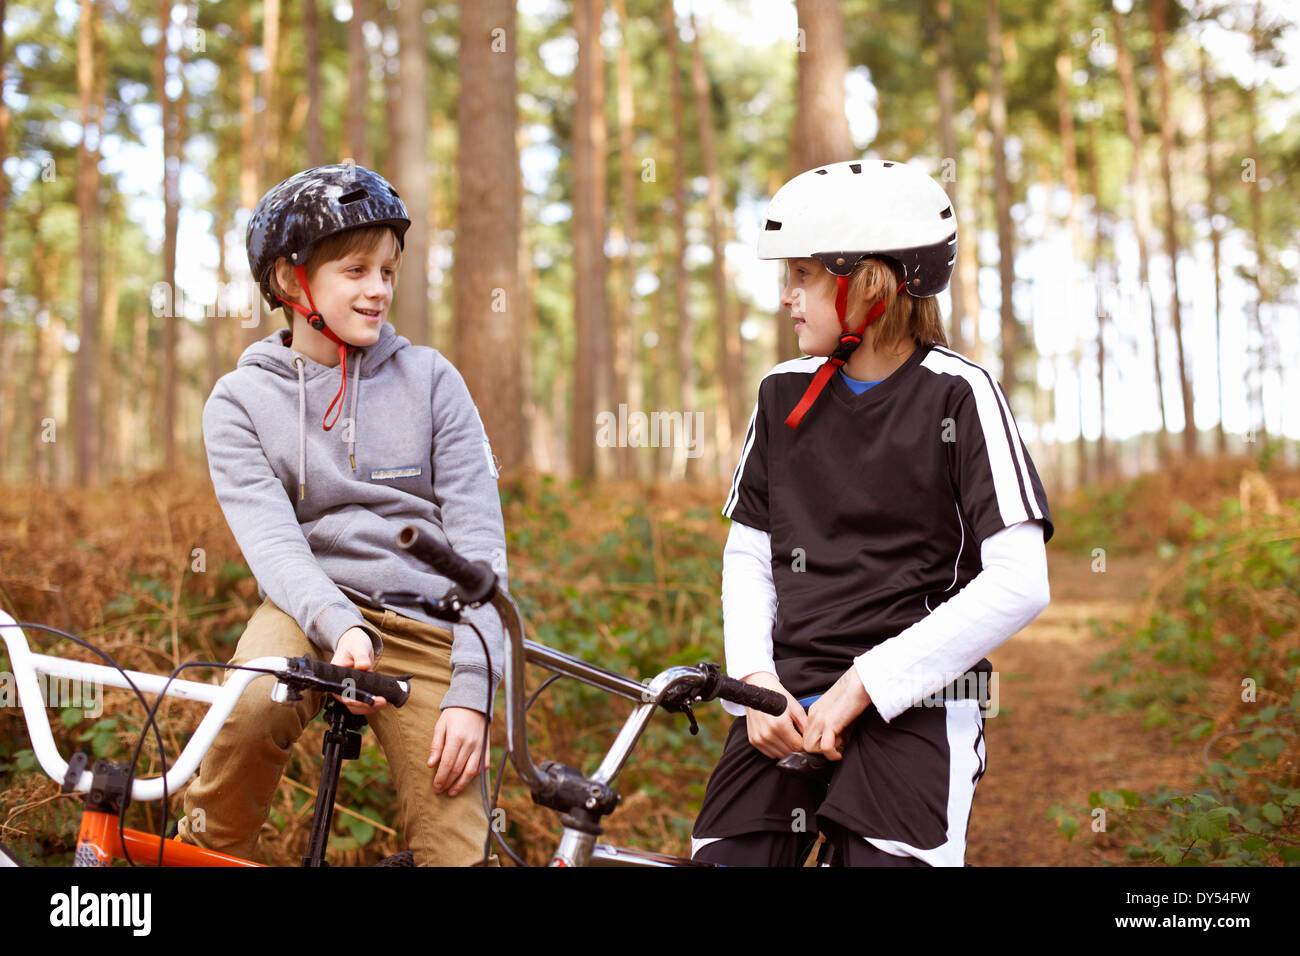 Zwillingsbrüder auf BMX-Bikes im Chat im Wald Stockfoto